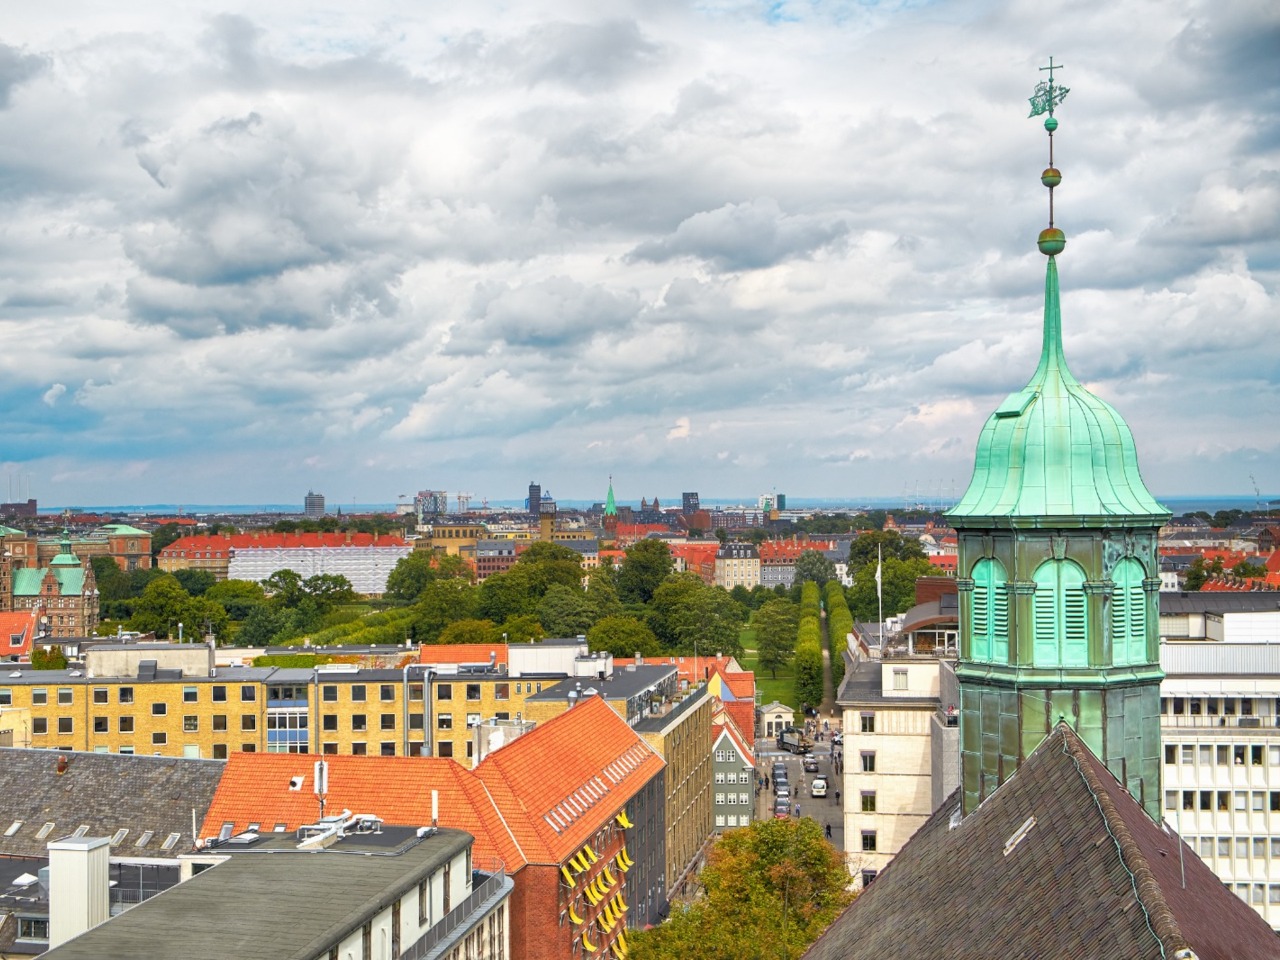 Обзорный променад по Копенгагену — столице Дании | Цена 130€, отзывы, описание экскурсии